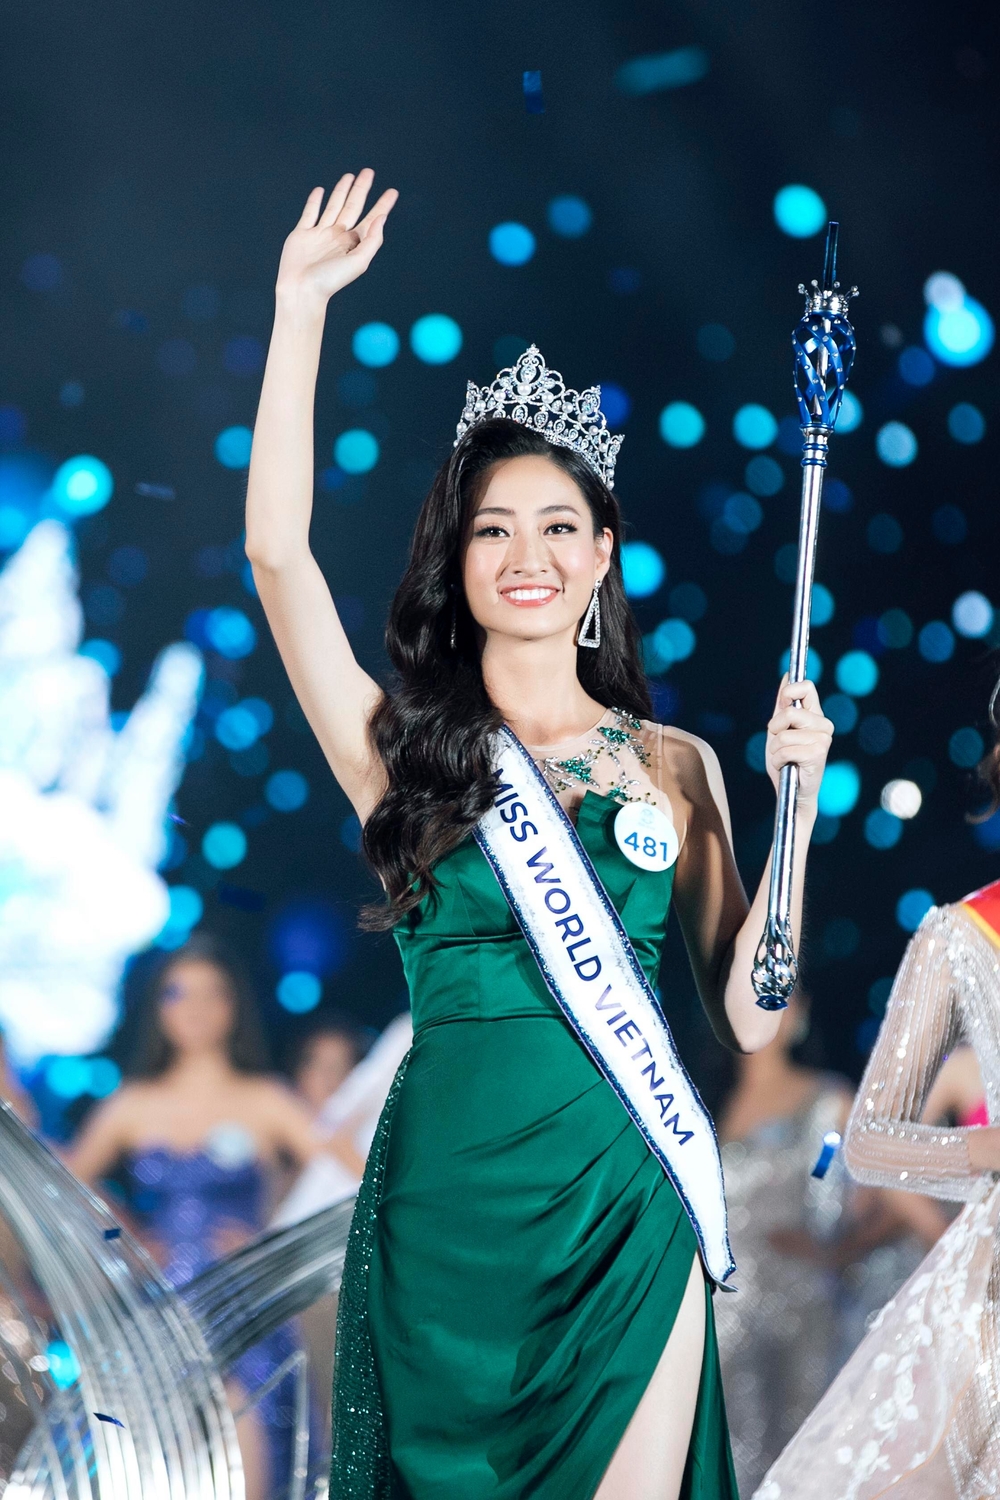 Khoảnh khắc đăng quang đáng nhớ của Tân Hoa hậu Thế giới Việt Nam 2019 - Lương Thùy Linh - Tin sao Viet - Tin tuc sao Viet - Scandal sao Viet - Tin tuc cua Sao - Tin cua Sao